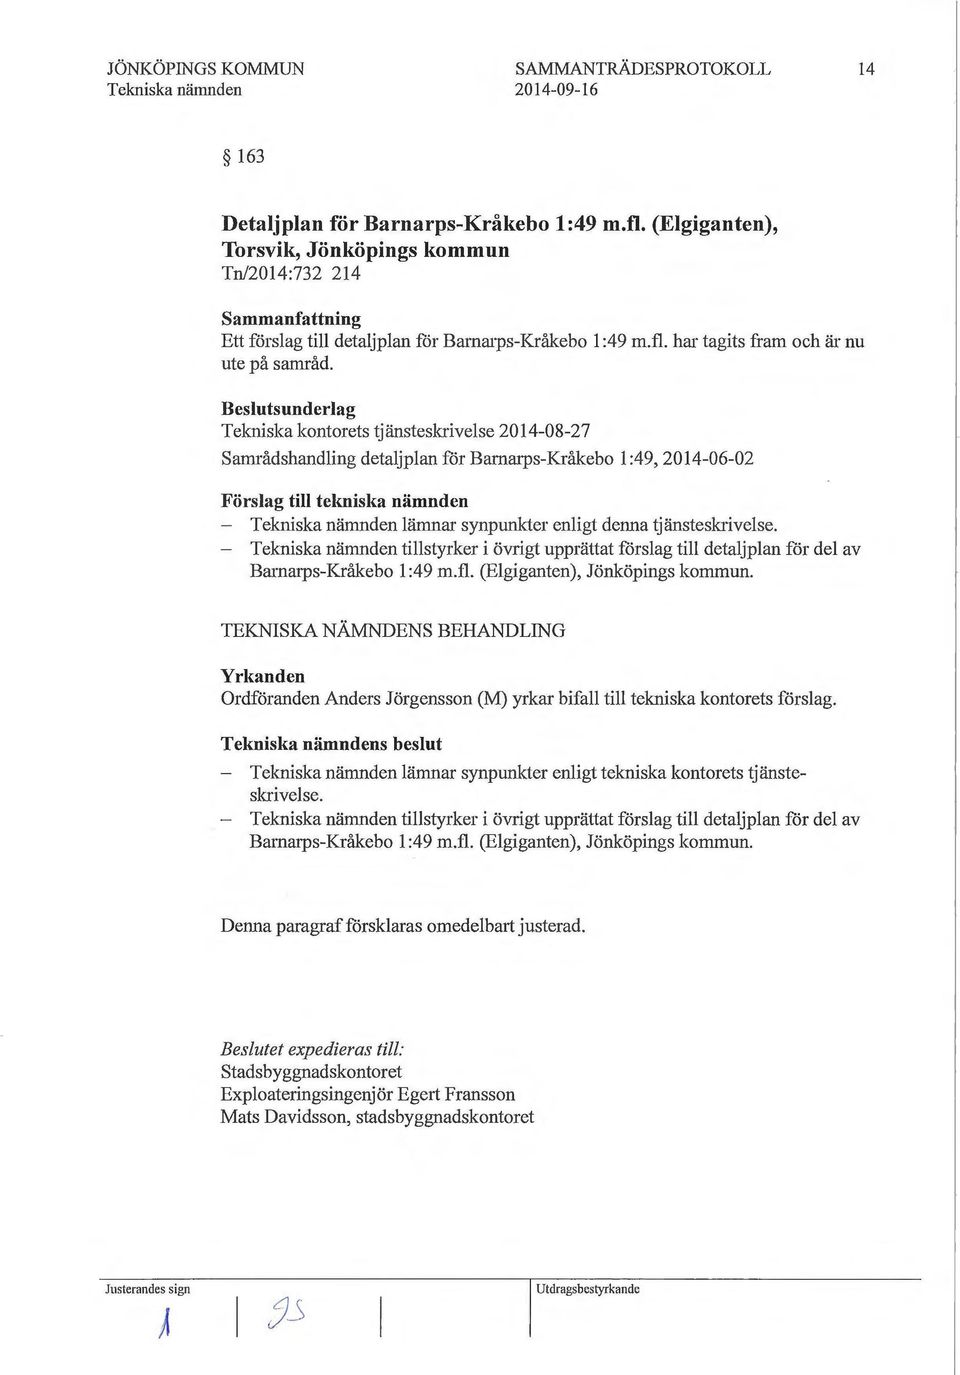 Tekniska kontorets tjänsteskrivelse 2014-08-27 Samrådshandling detaljplan för Barnarps-Kråkebo l :49, 2014-06-02 Förslag till tekniska nämnden - lämnar synpunkter enligt denna tjänsteskrivelse.